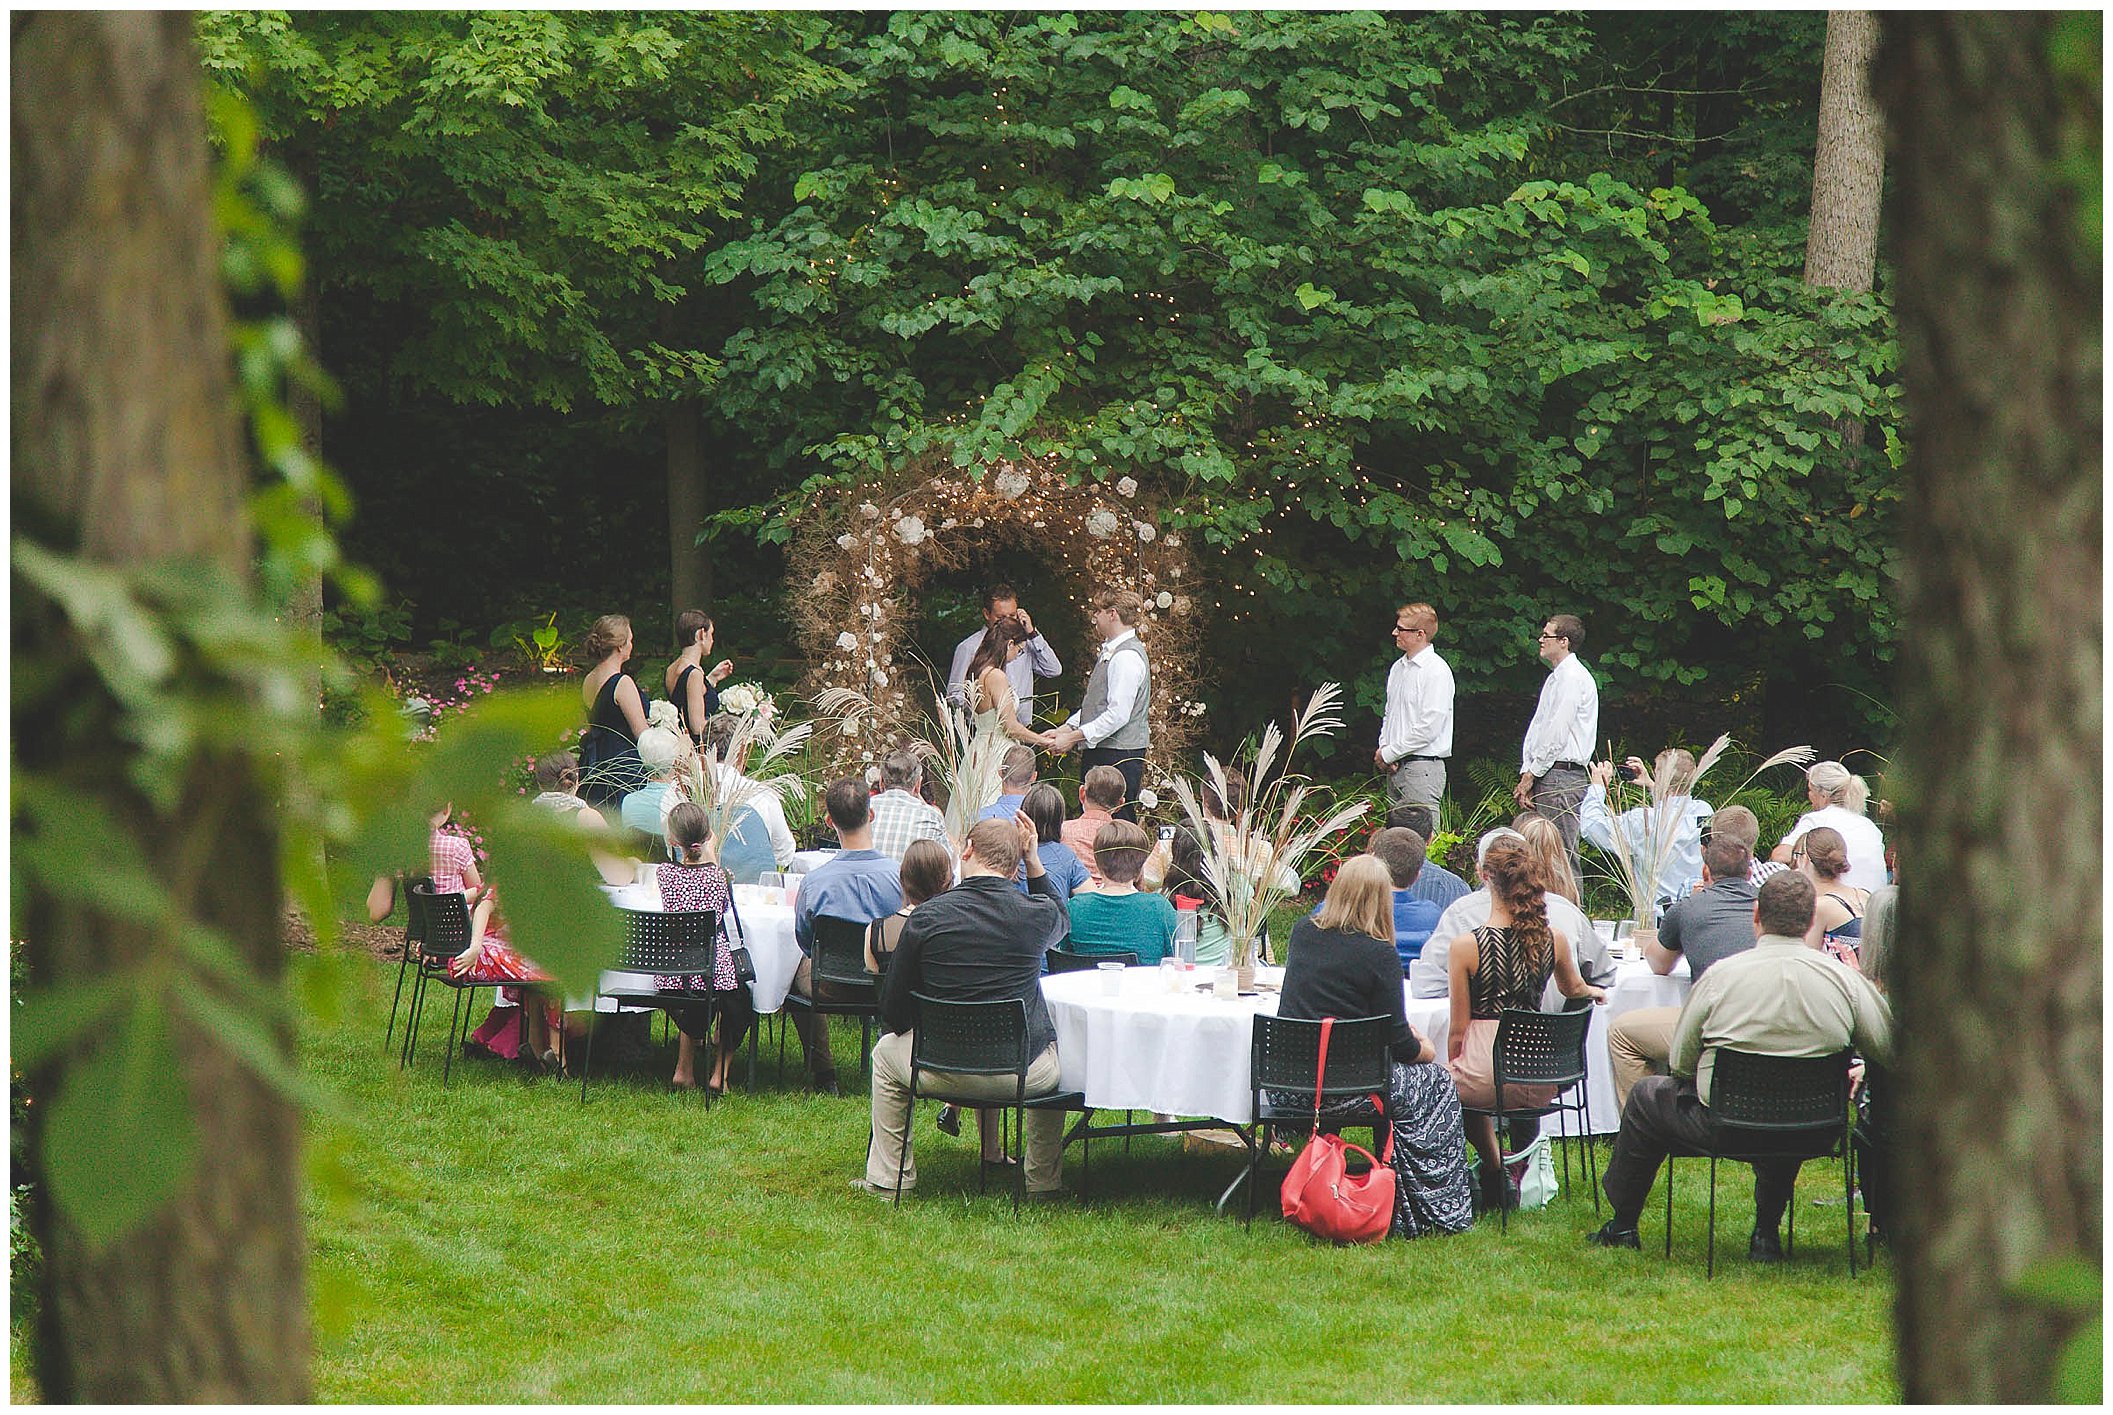 Stunning backyard wedding with twinkly lights, Fort Wayne Indiana Wedding Photographer_0021.jpg